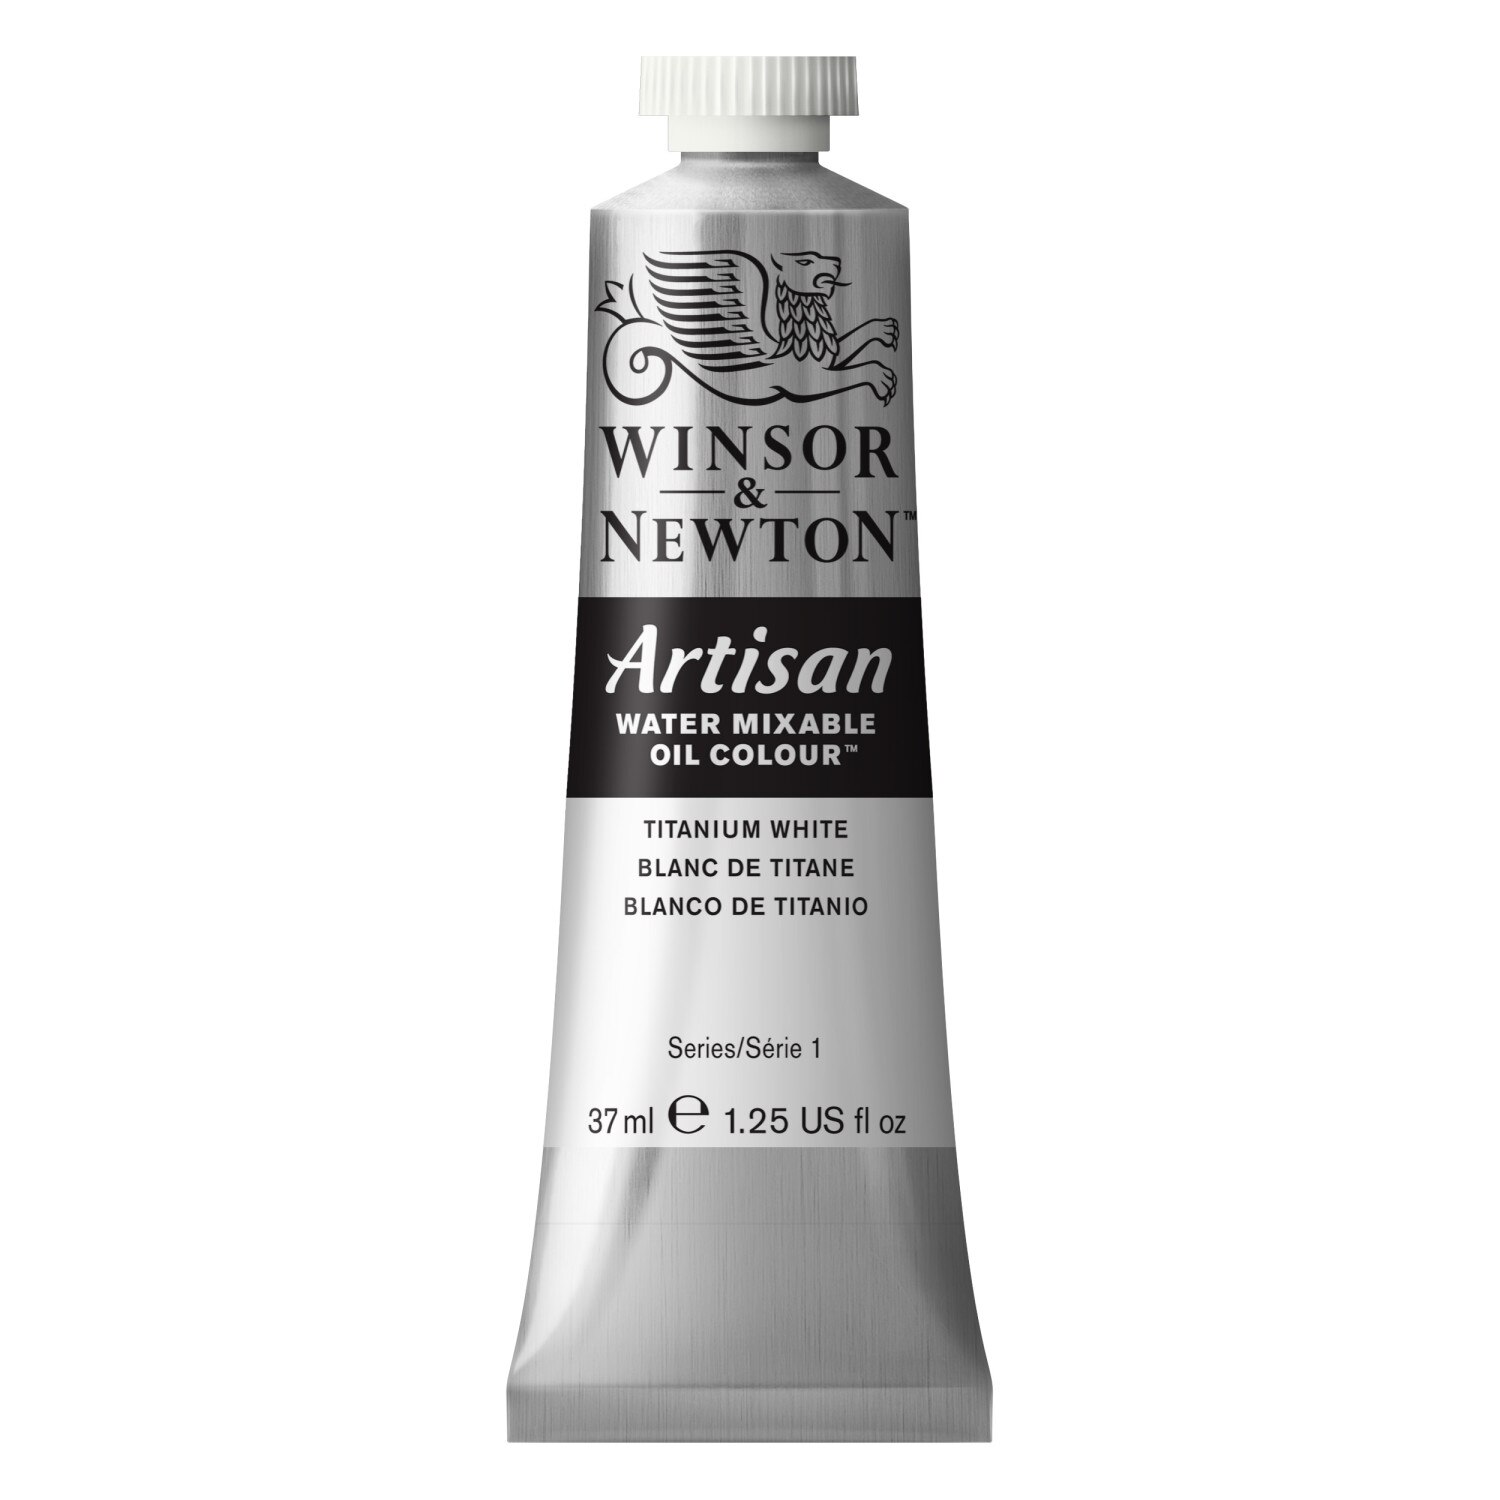 Winsor & Newton Artisan Water Mixable Oil Color, 37ml, Titanium White